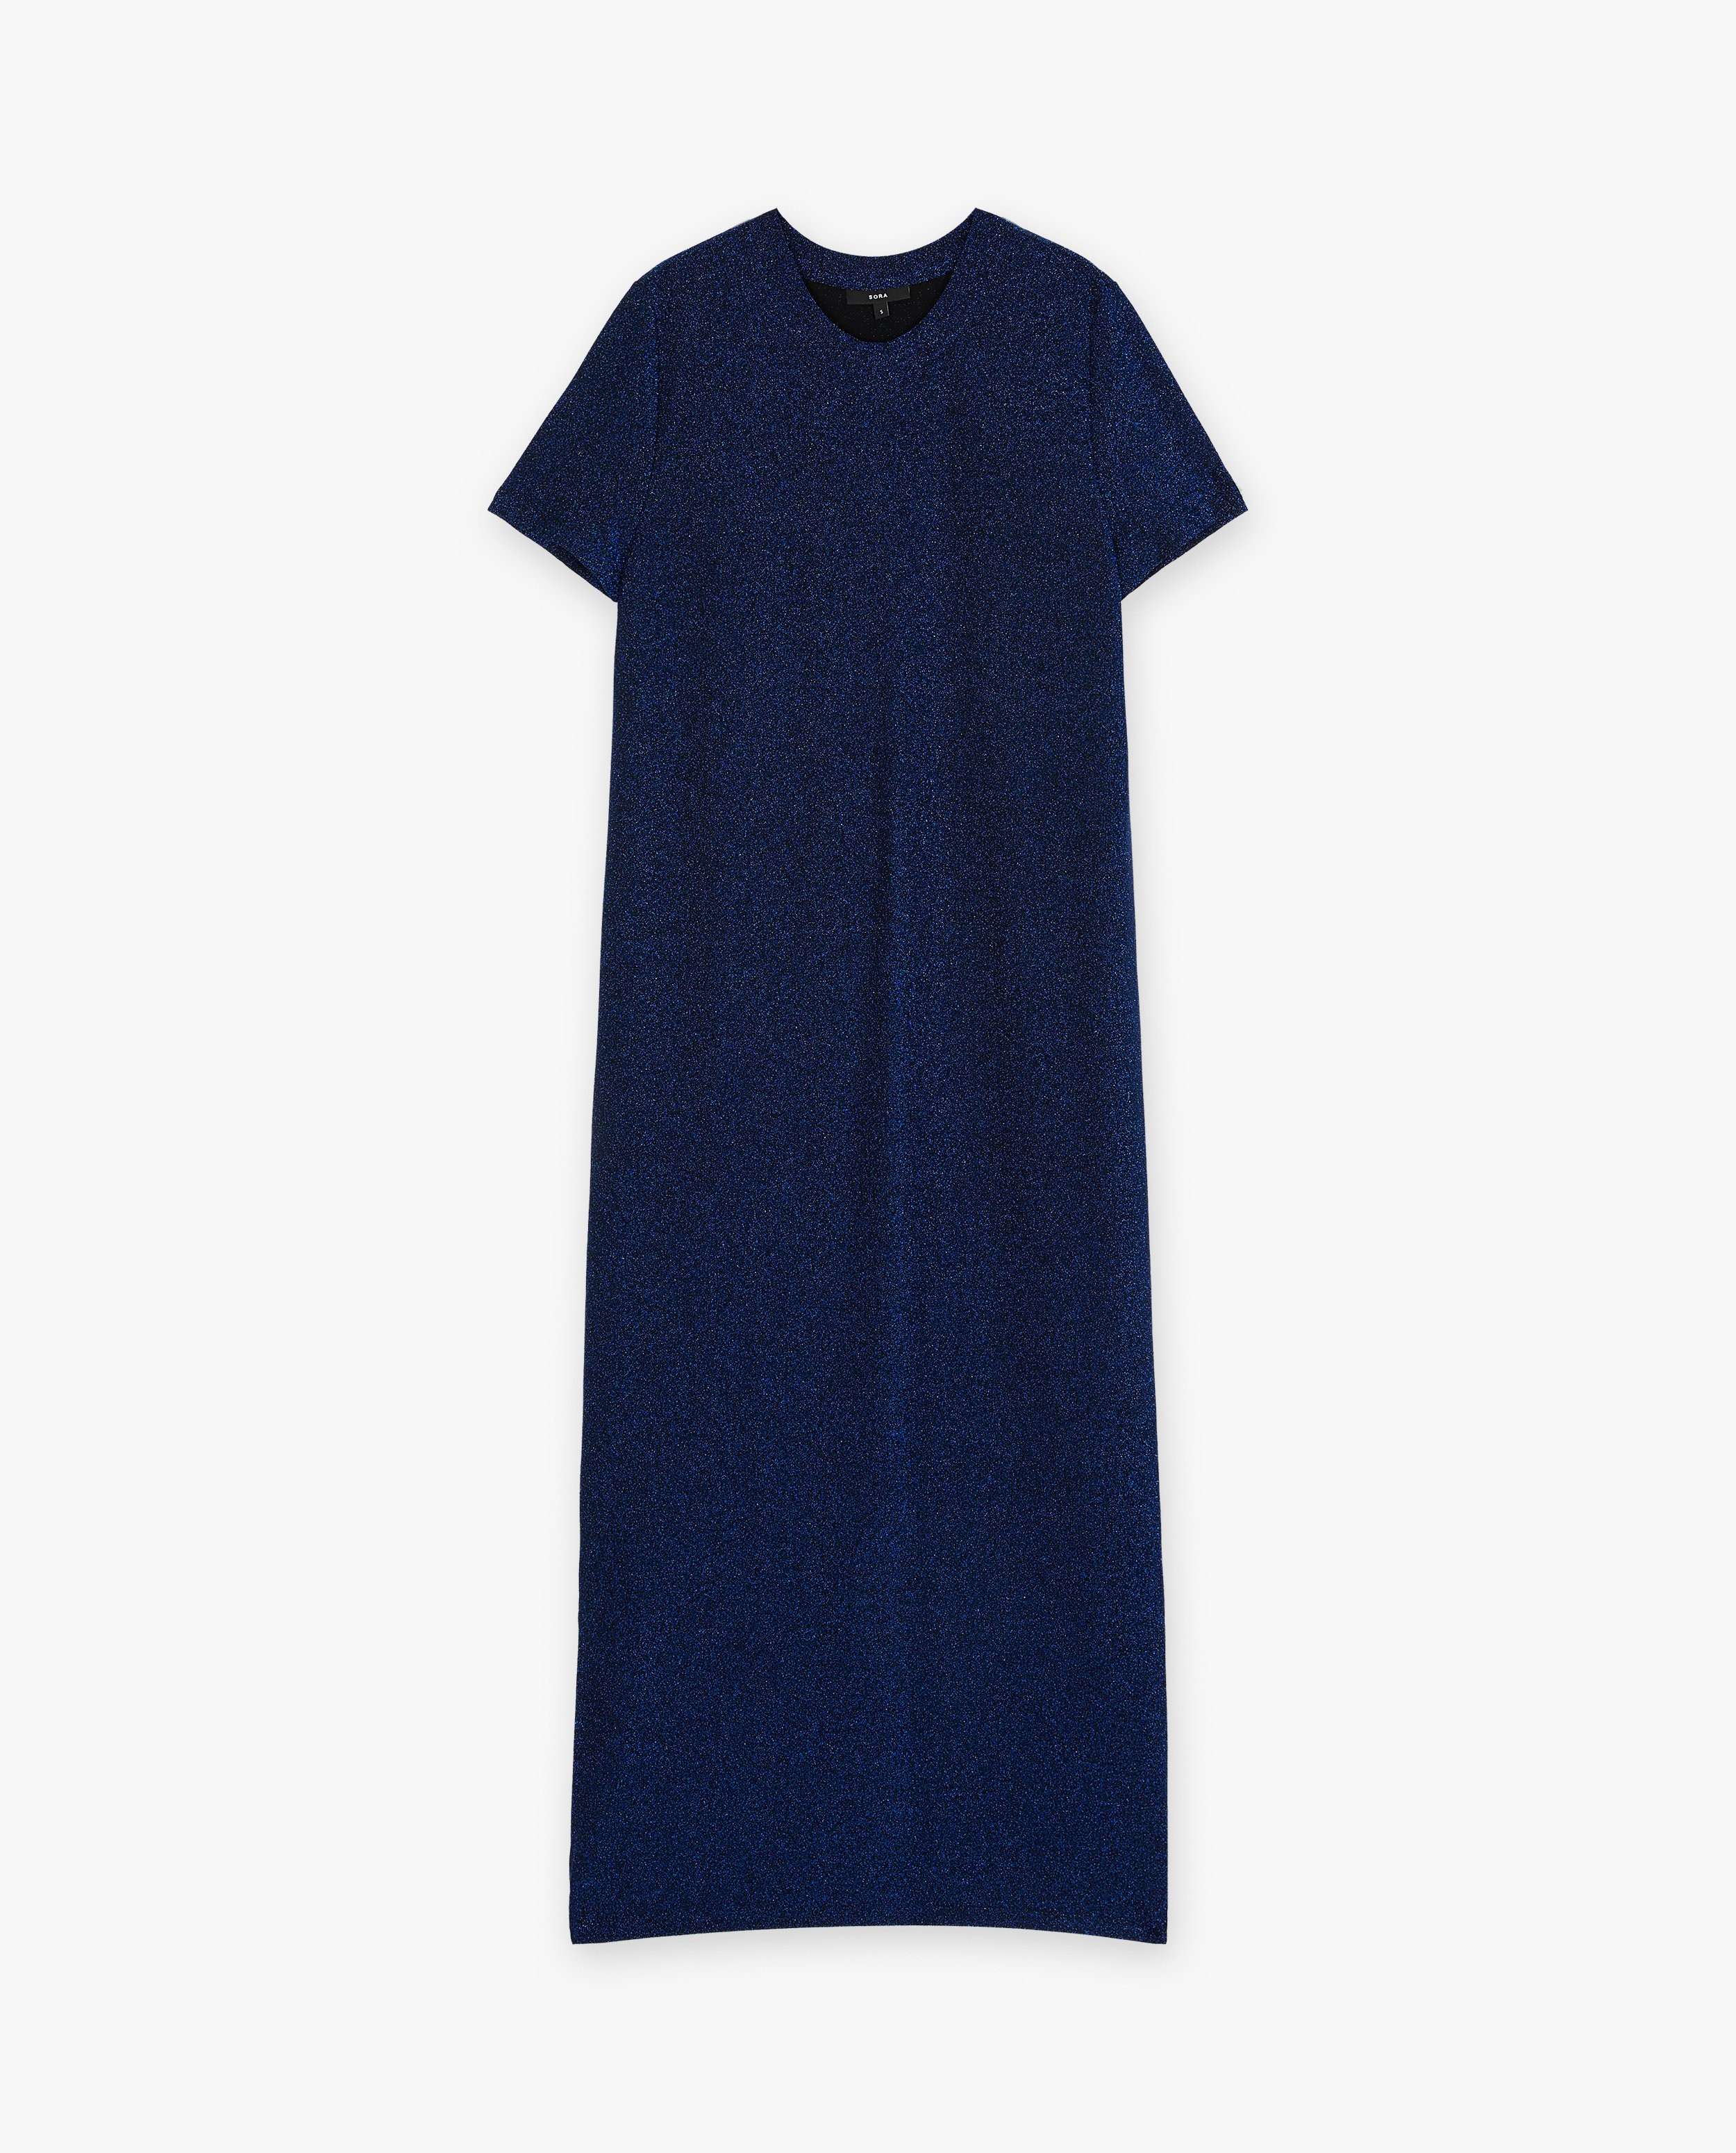 Kleedjes - Blauwe jurk met metaaldraad